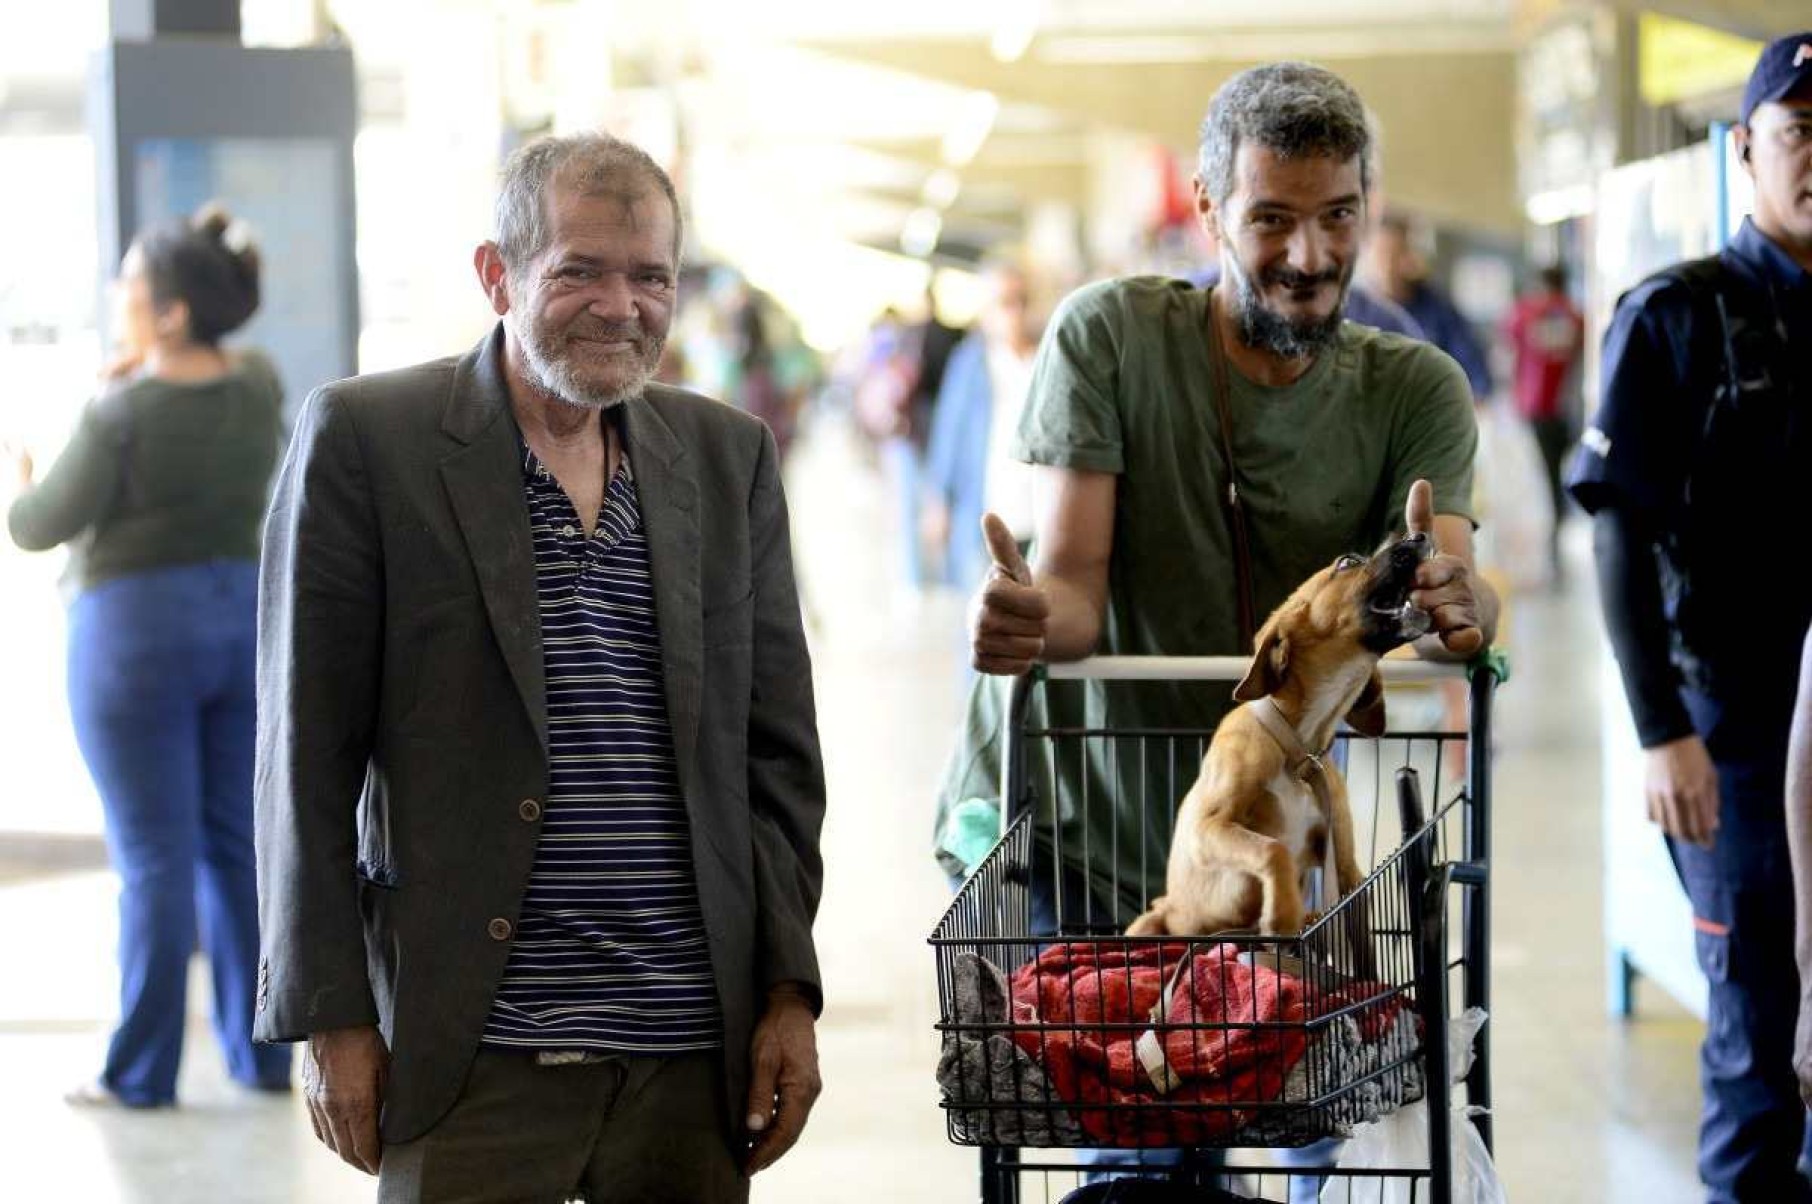 Melhor amigo do homem: pessoas em situação de rua adotam cães como família